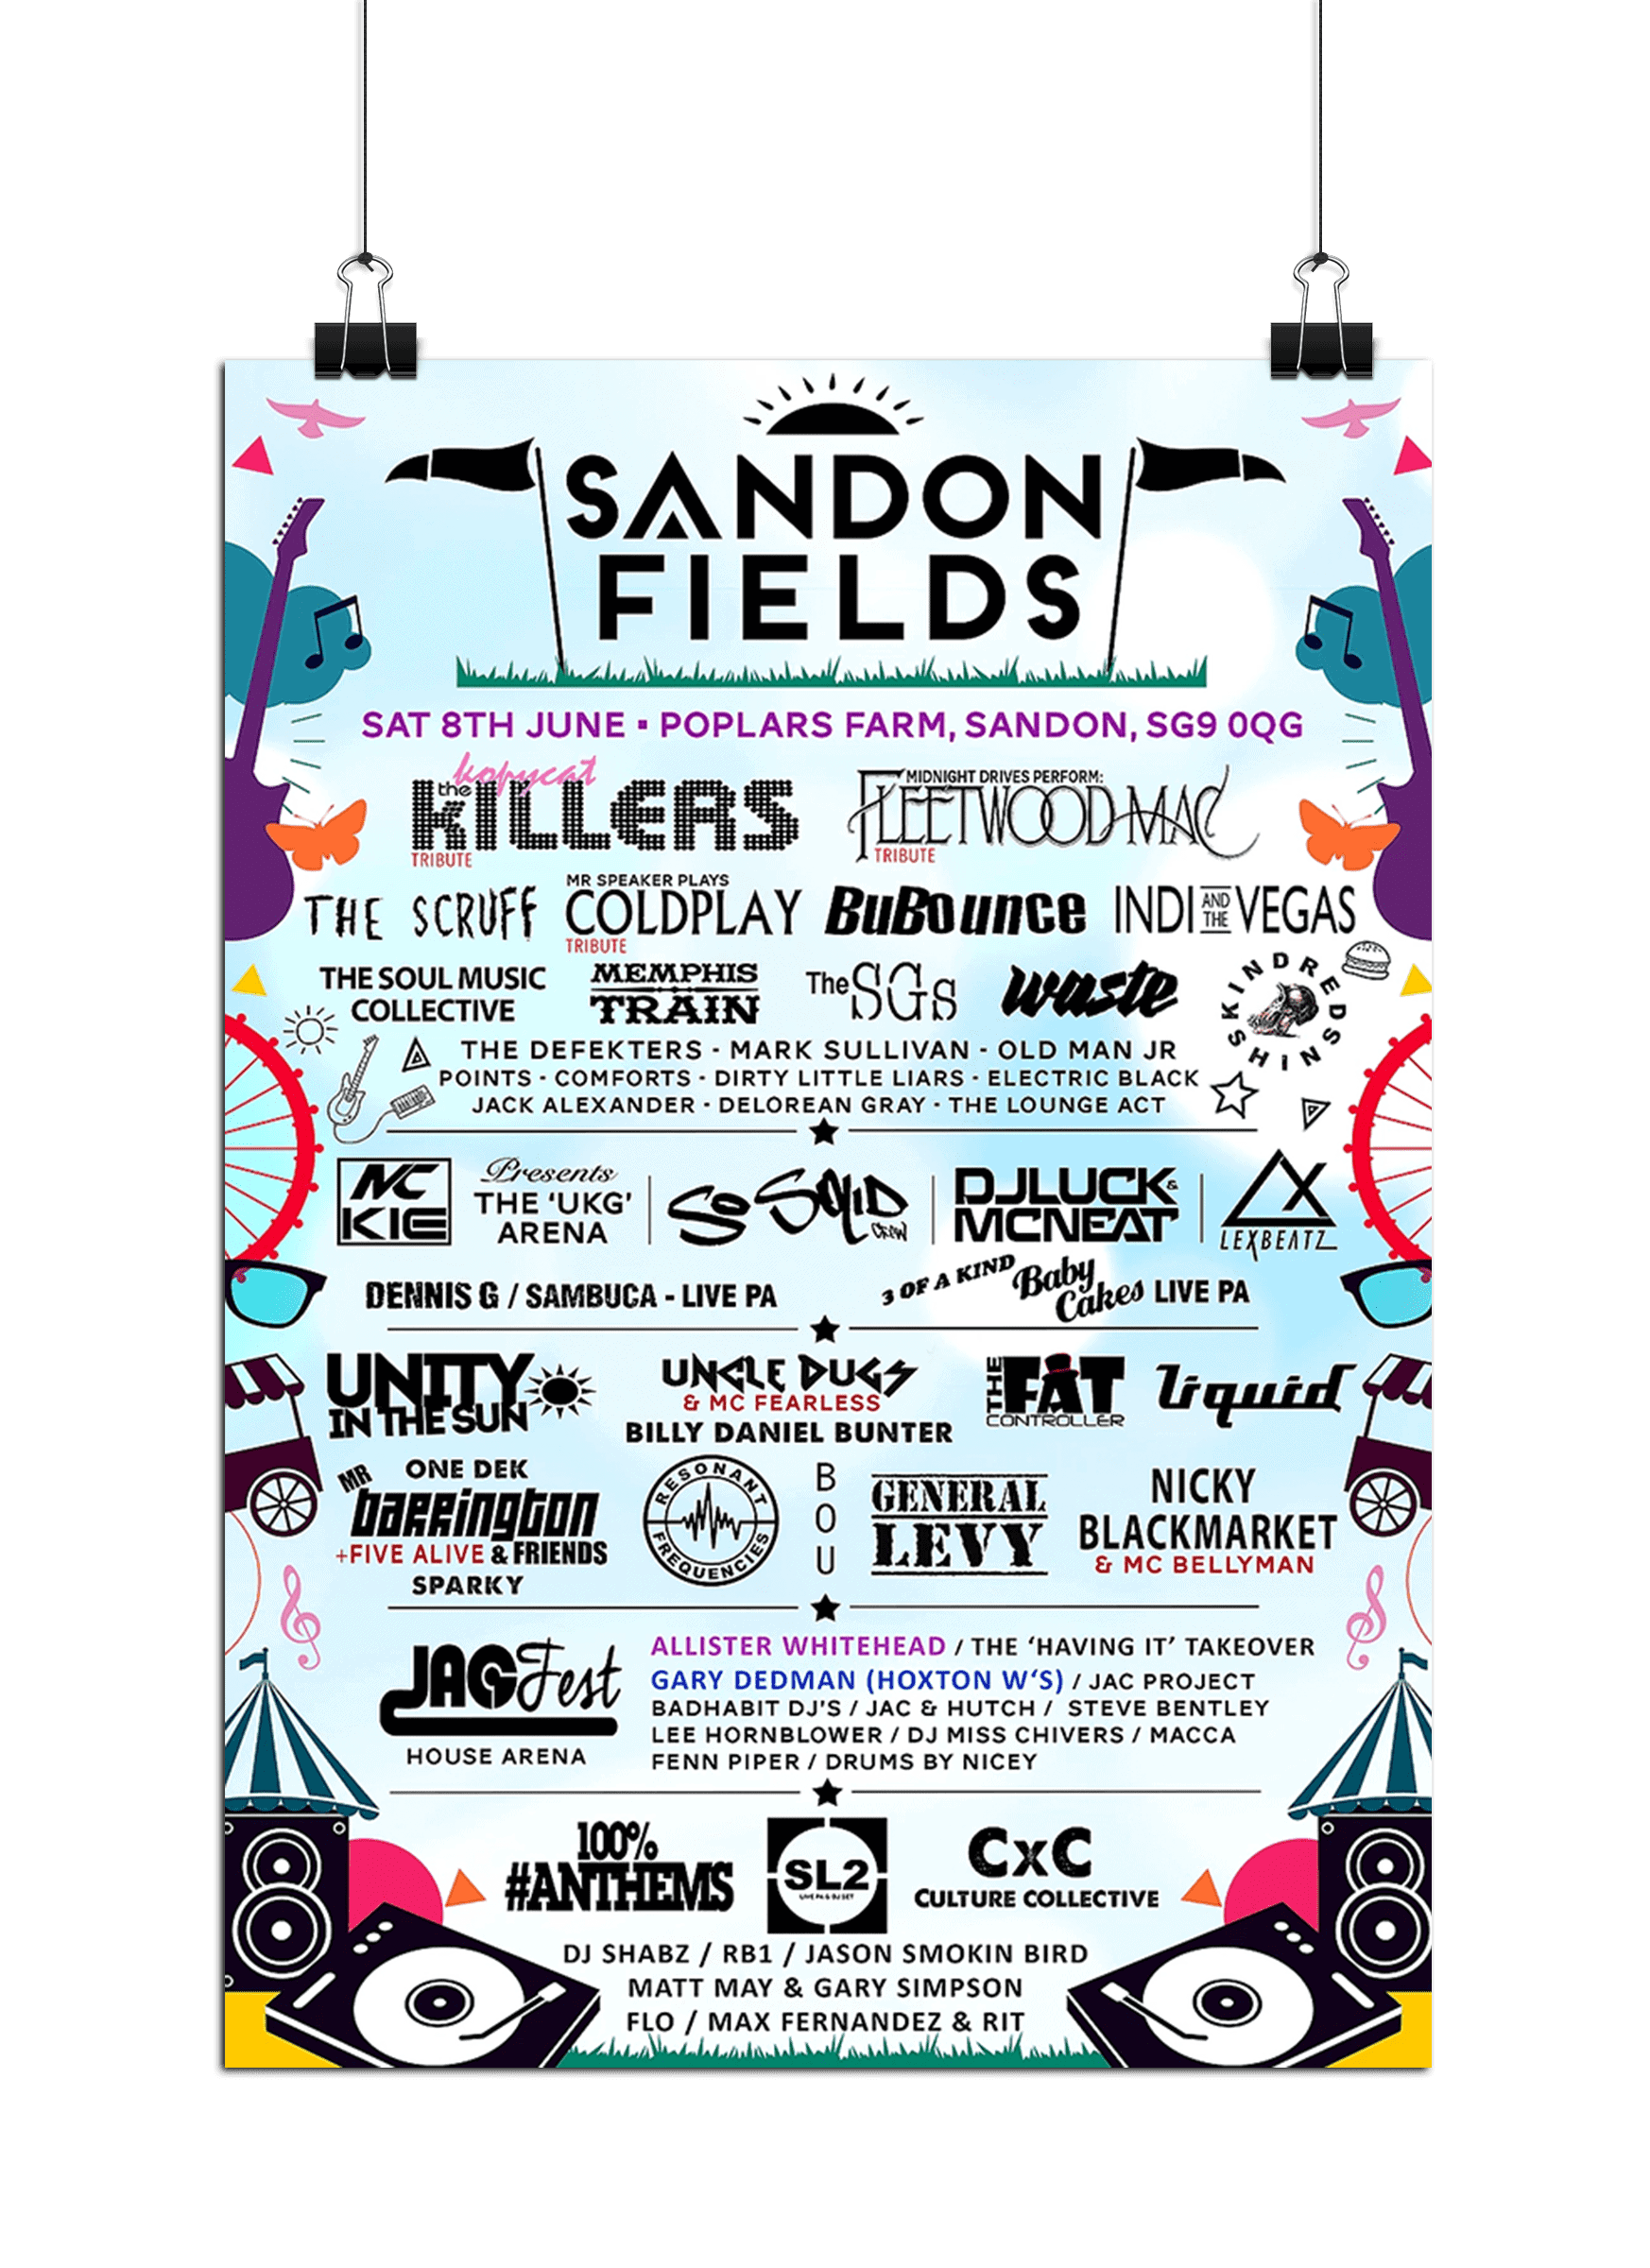 sandon fields festival poster design